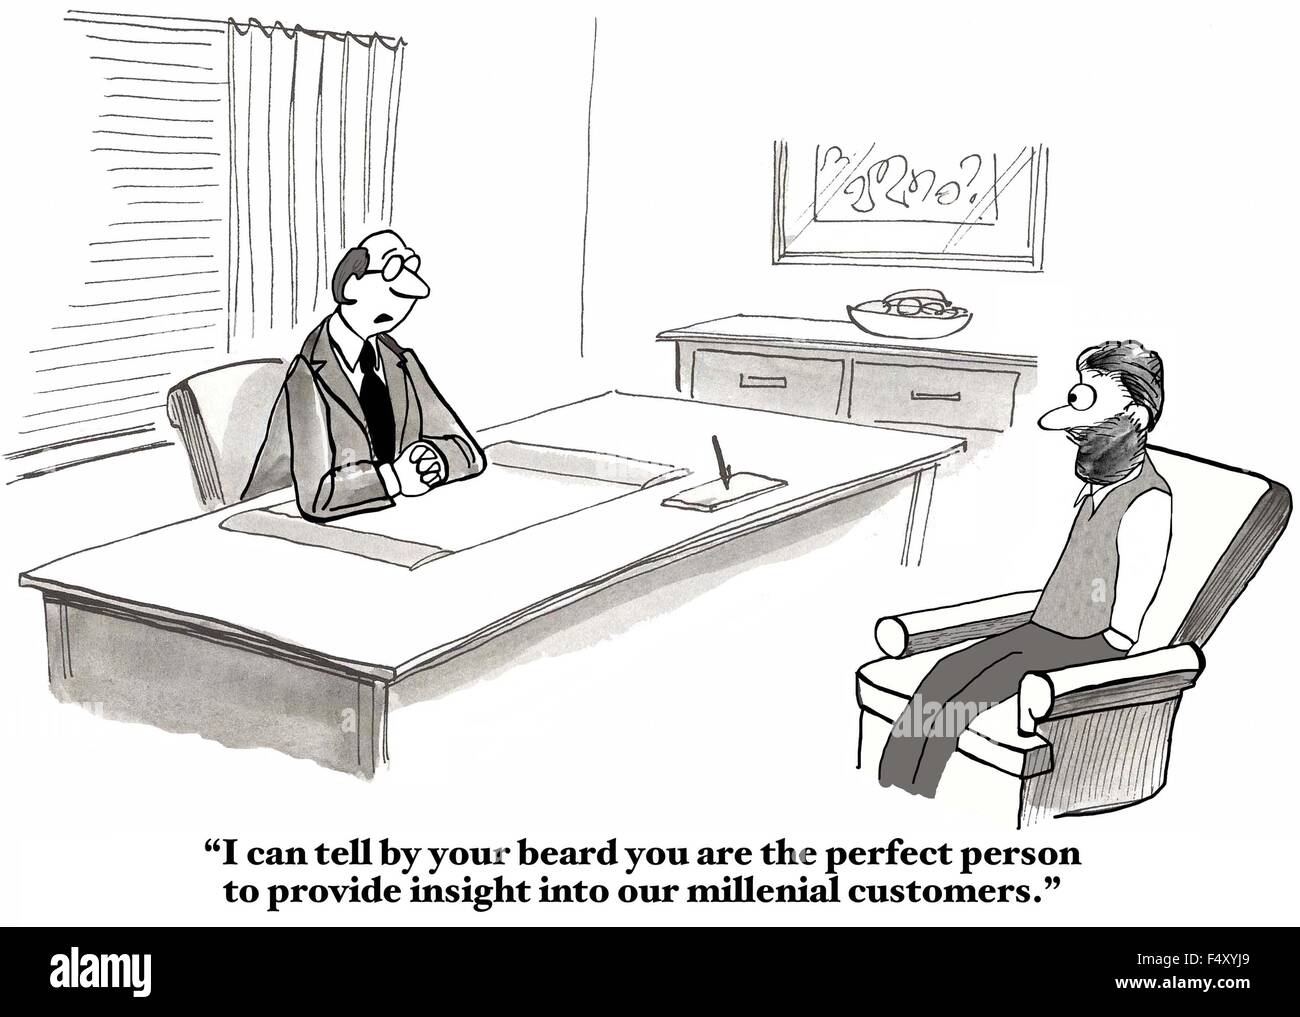 Business cartoon dell'uomo dicendo al consulente, "Mi può dire per la barba... perfetta persona... insight... i clienti millenario'. Foto Stock